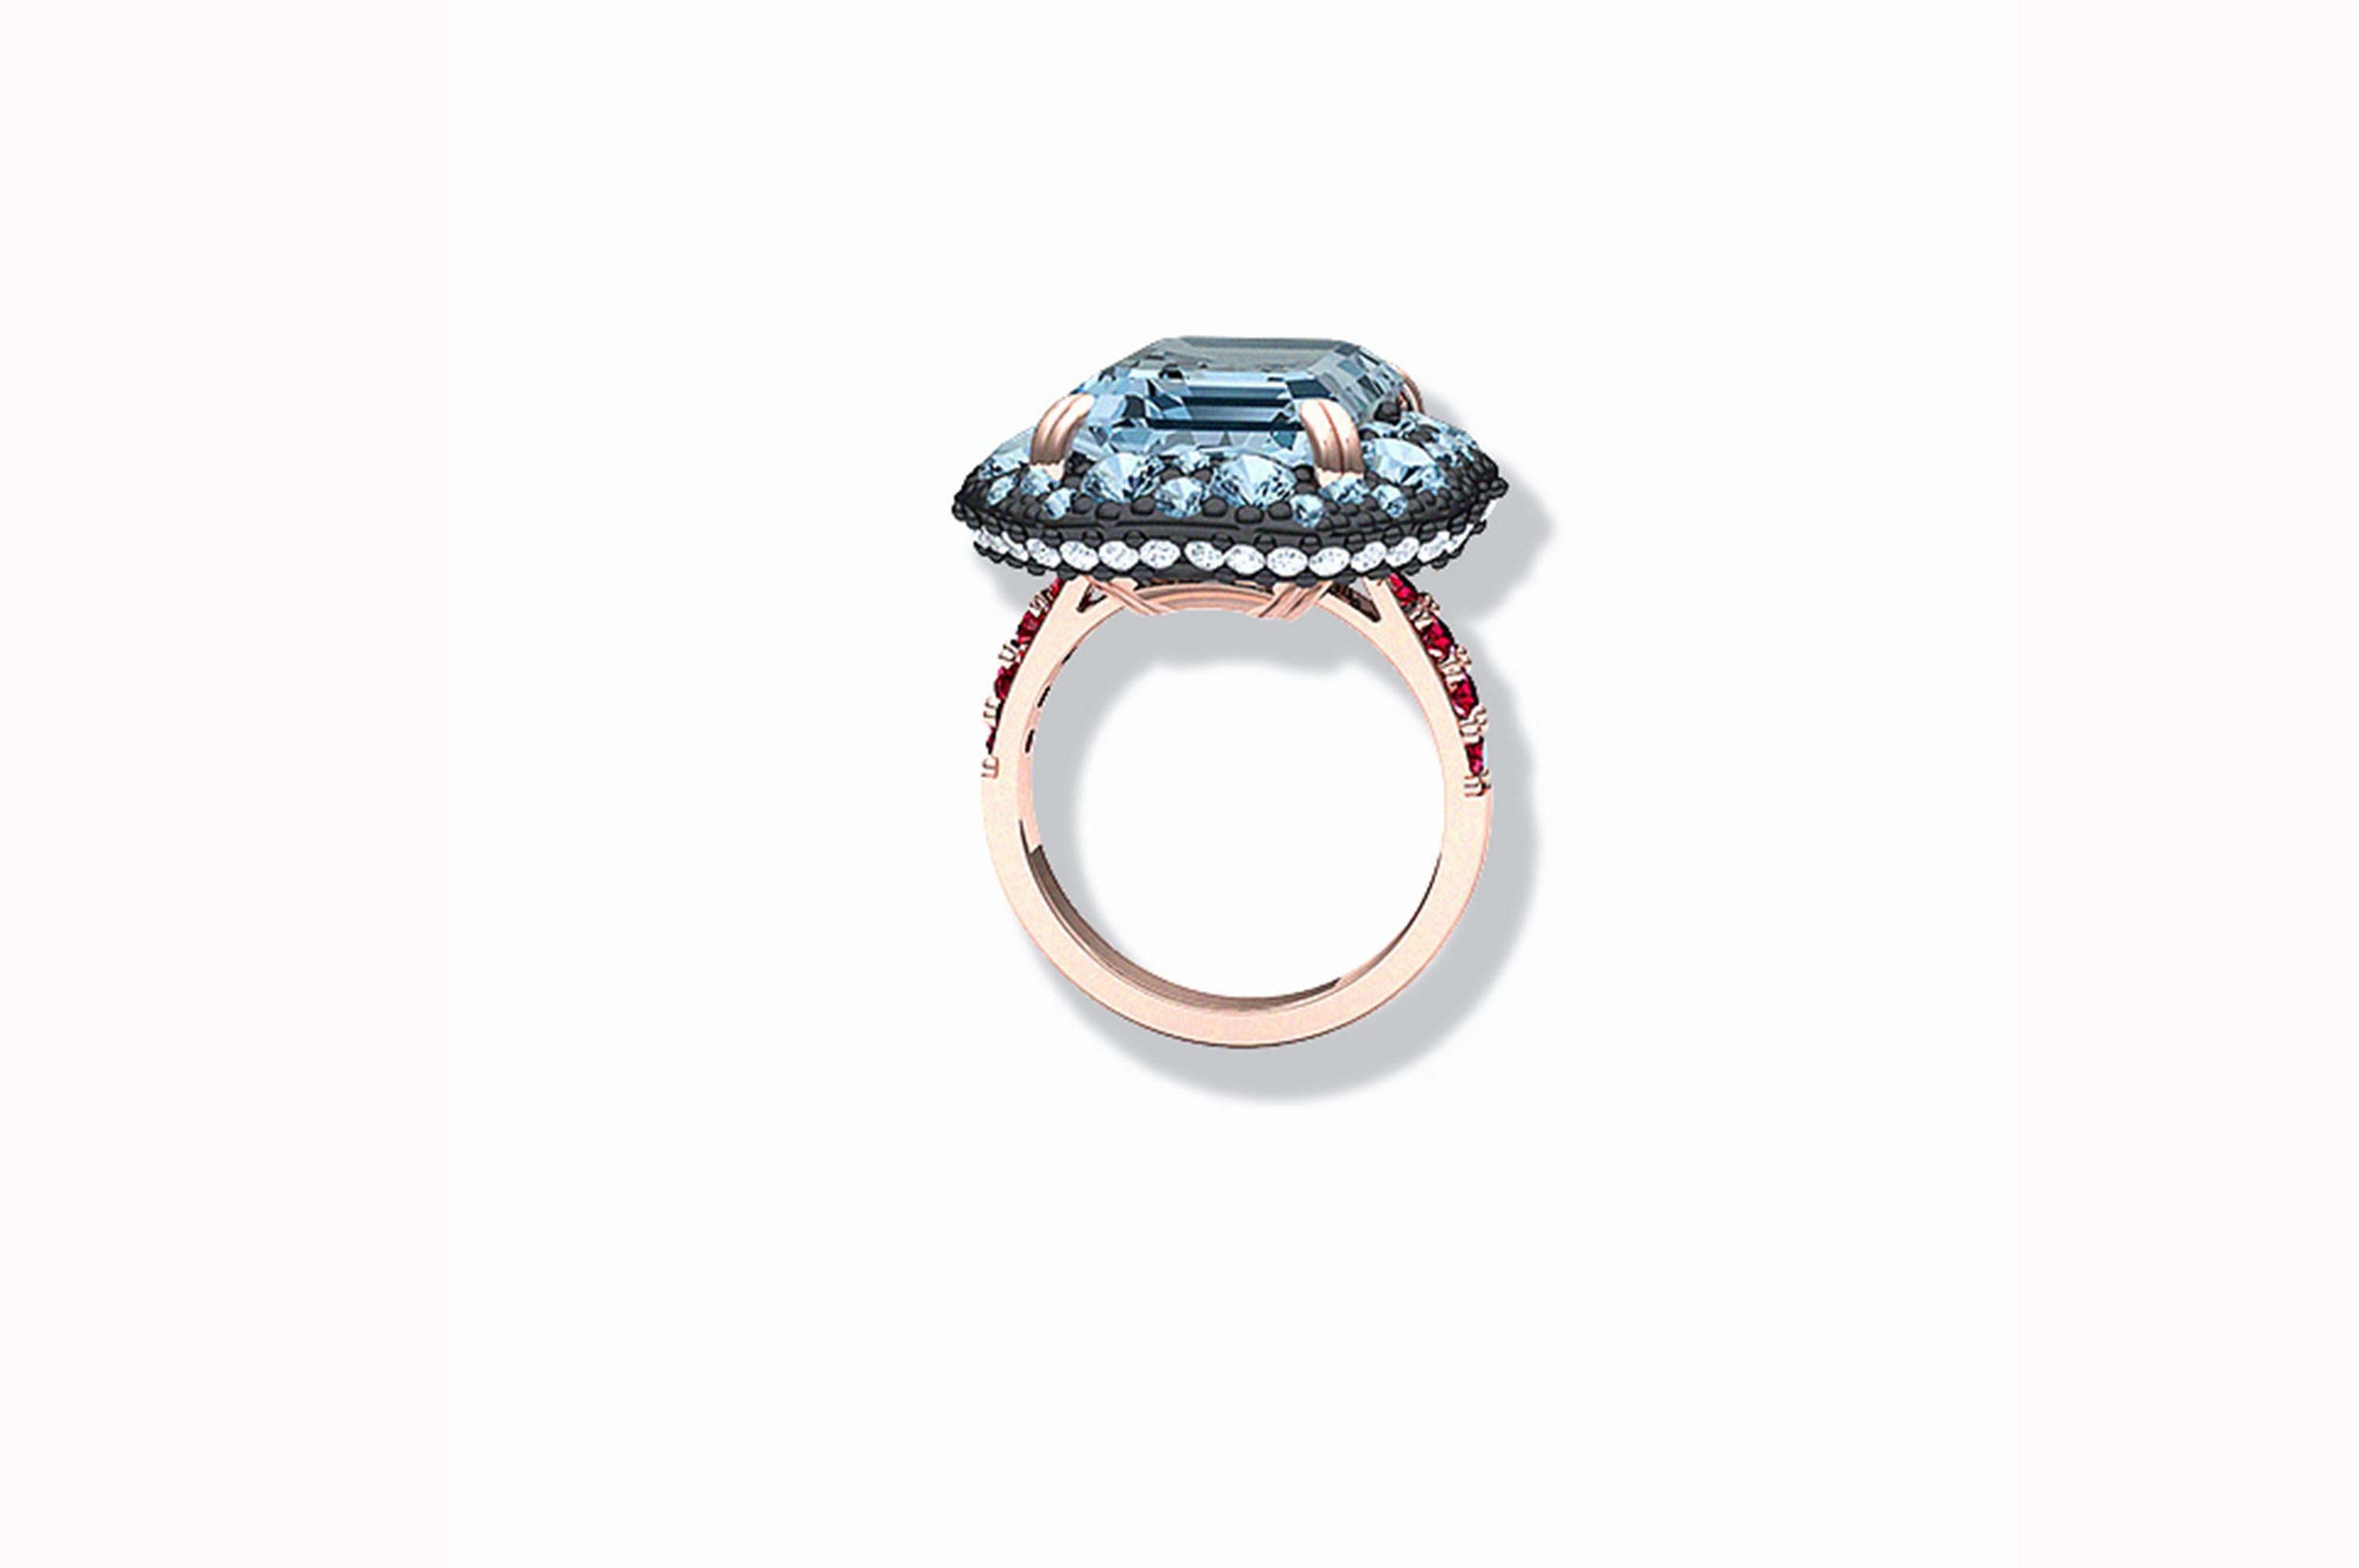 8 carat aquamarine ring